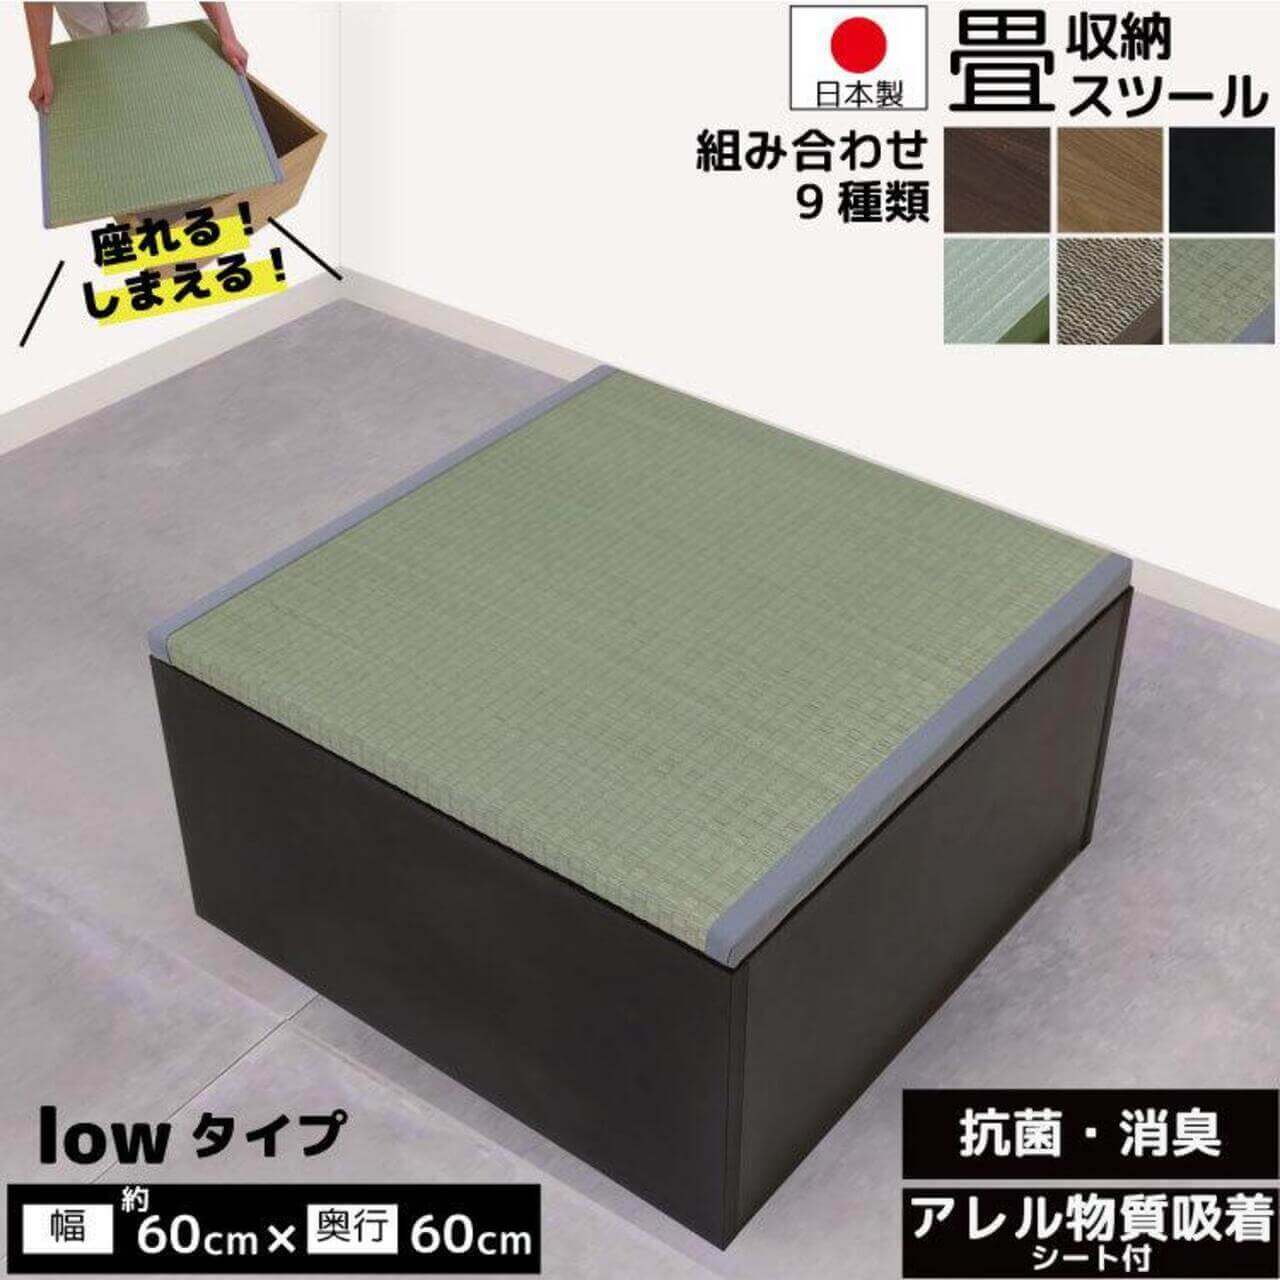 畳収納ボックス ハイタイプ 約60×60×43cm 日本製 い草 畳ボックス 小 